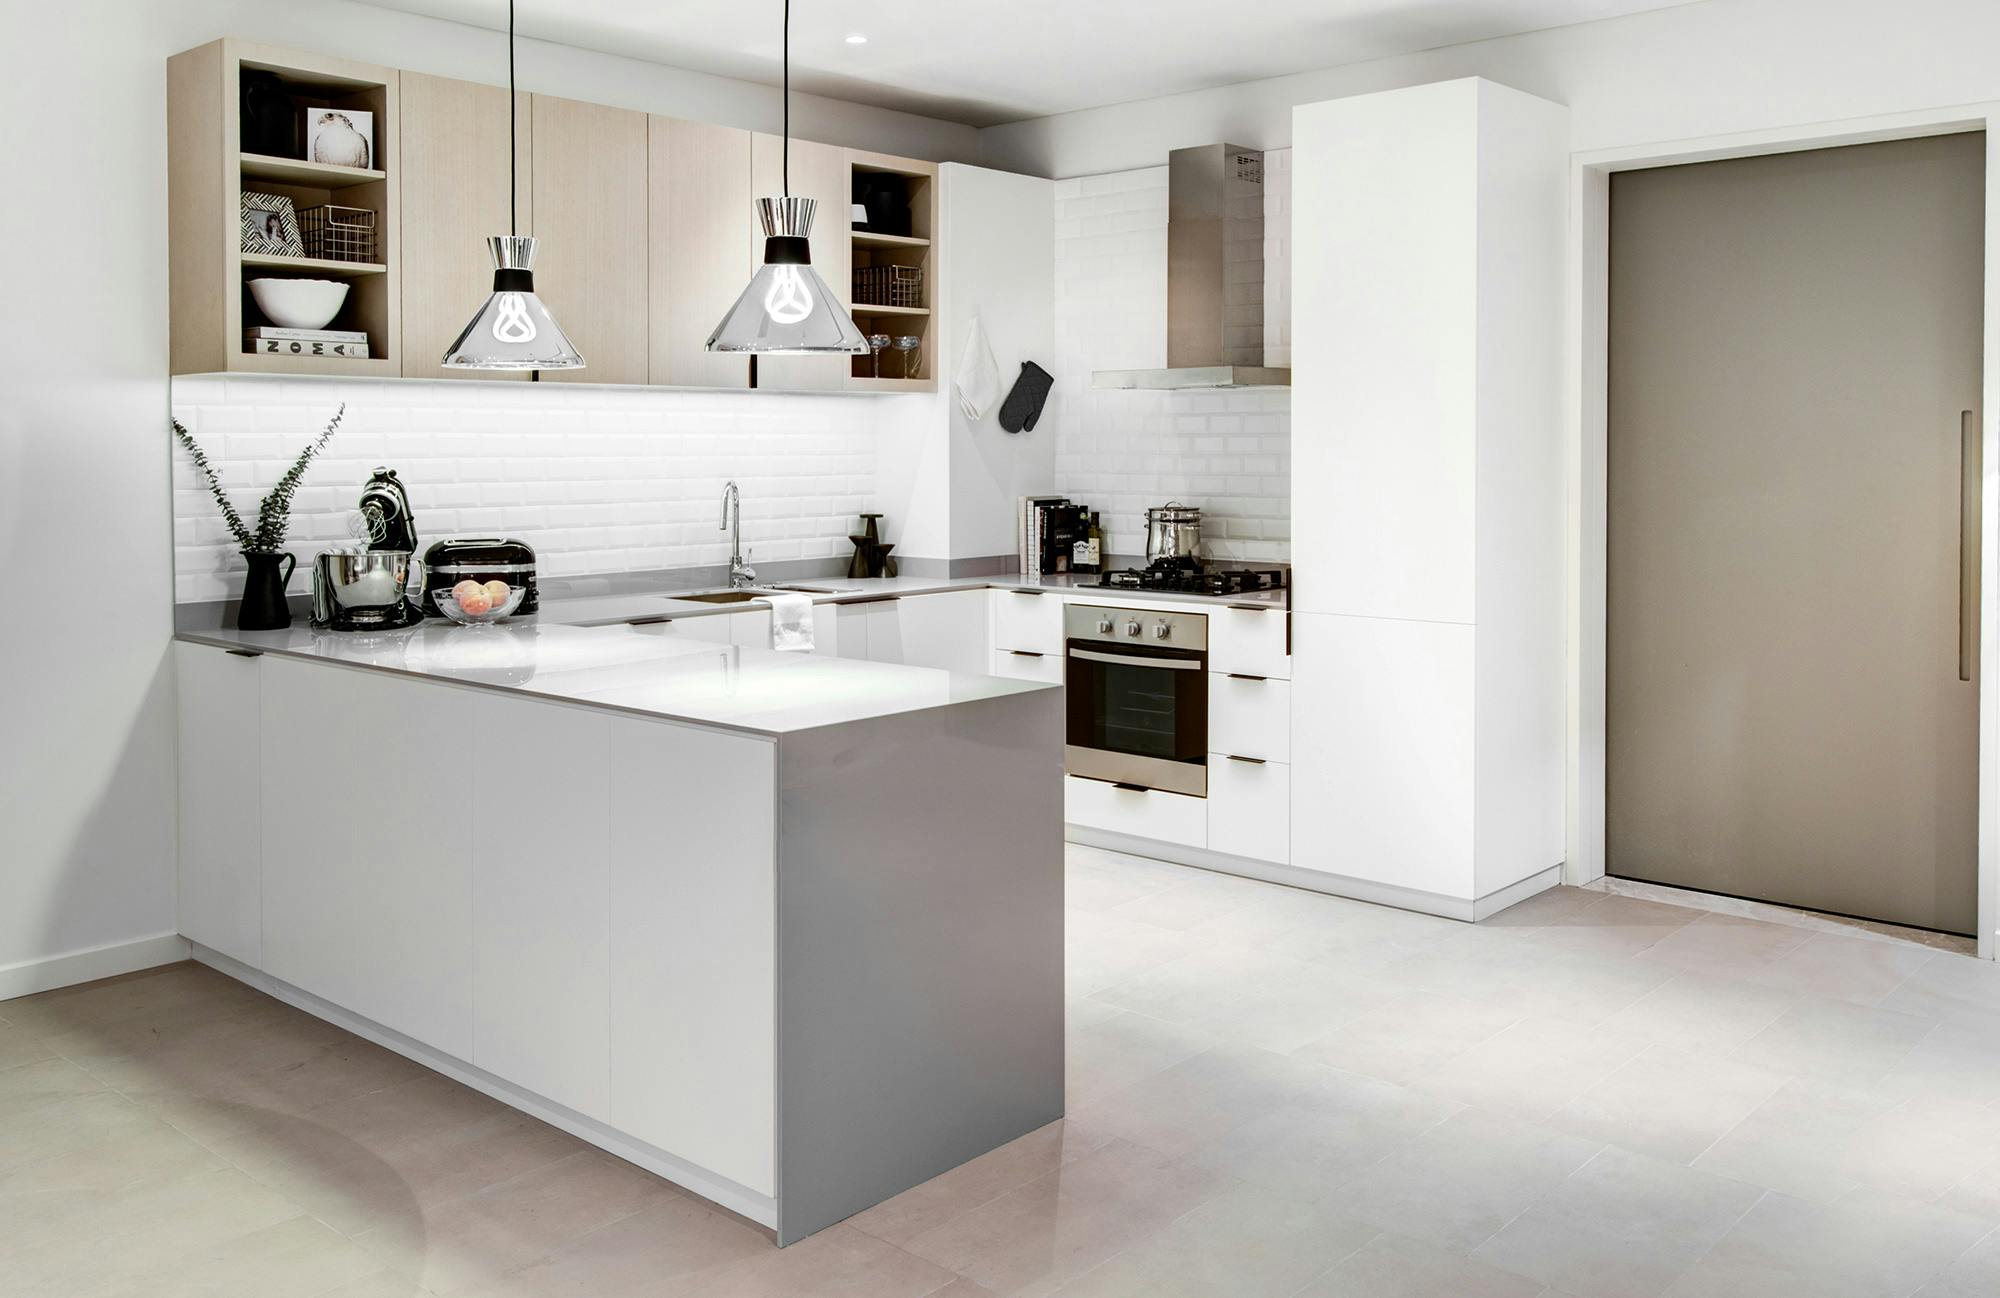 Bildnummer 40 des aktuellen Abschnitts von High-end homes with a modern design and durable materials von Cosentino Deutschland